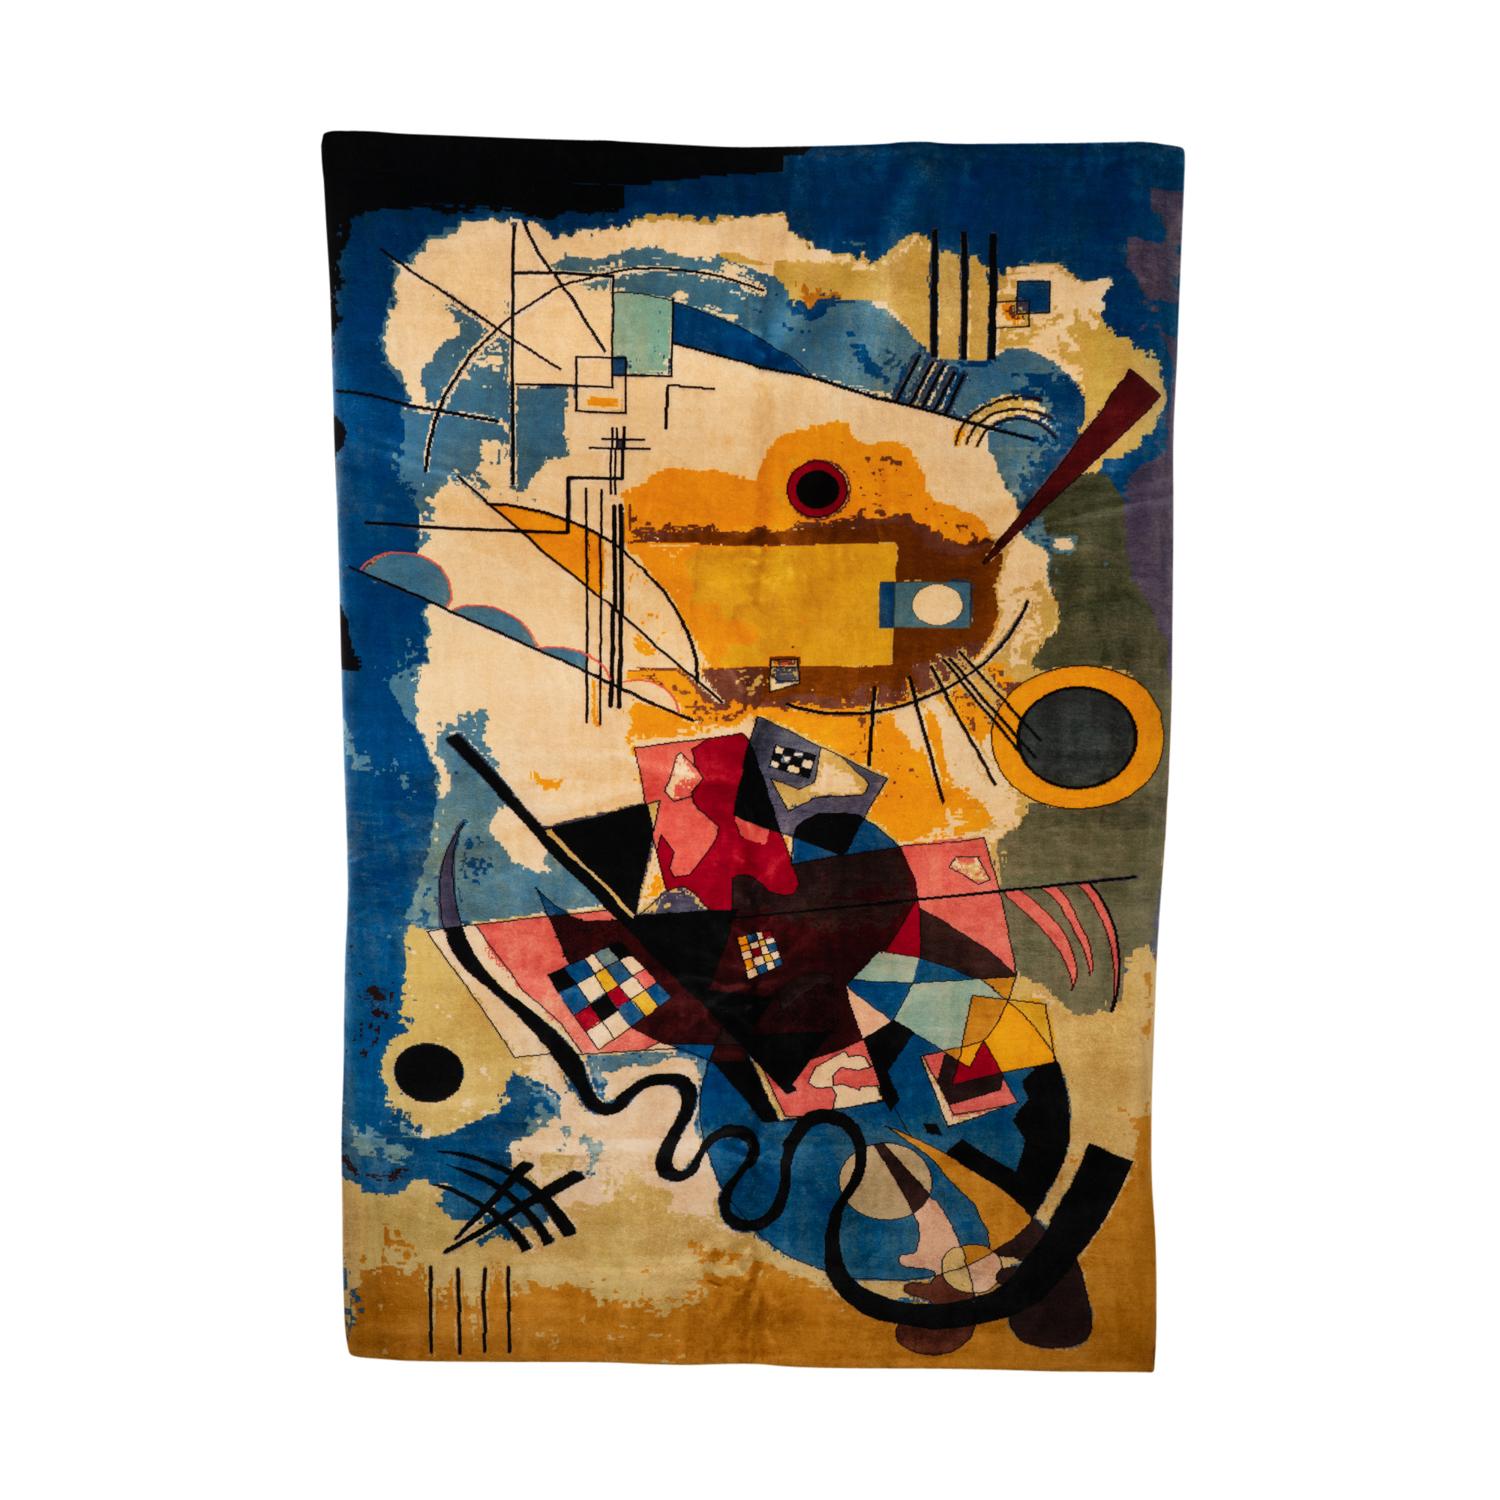 Teppich oder Wandteppich, inspiriert von Wassily Kandinsky, abstrakt und in Blau- und Gelbtönen gehalten. Handgeknüpft aus Merinowolle.

Zeitgenössische Handwerkskunst.

Nummeriert 1/8. Fläche: 6 M2. Dichte: 840.000 Knoten.

Mit einem vom